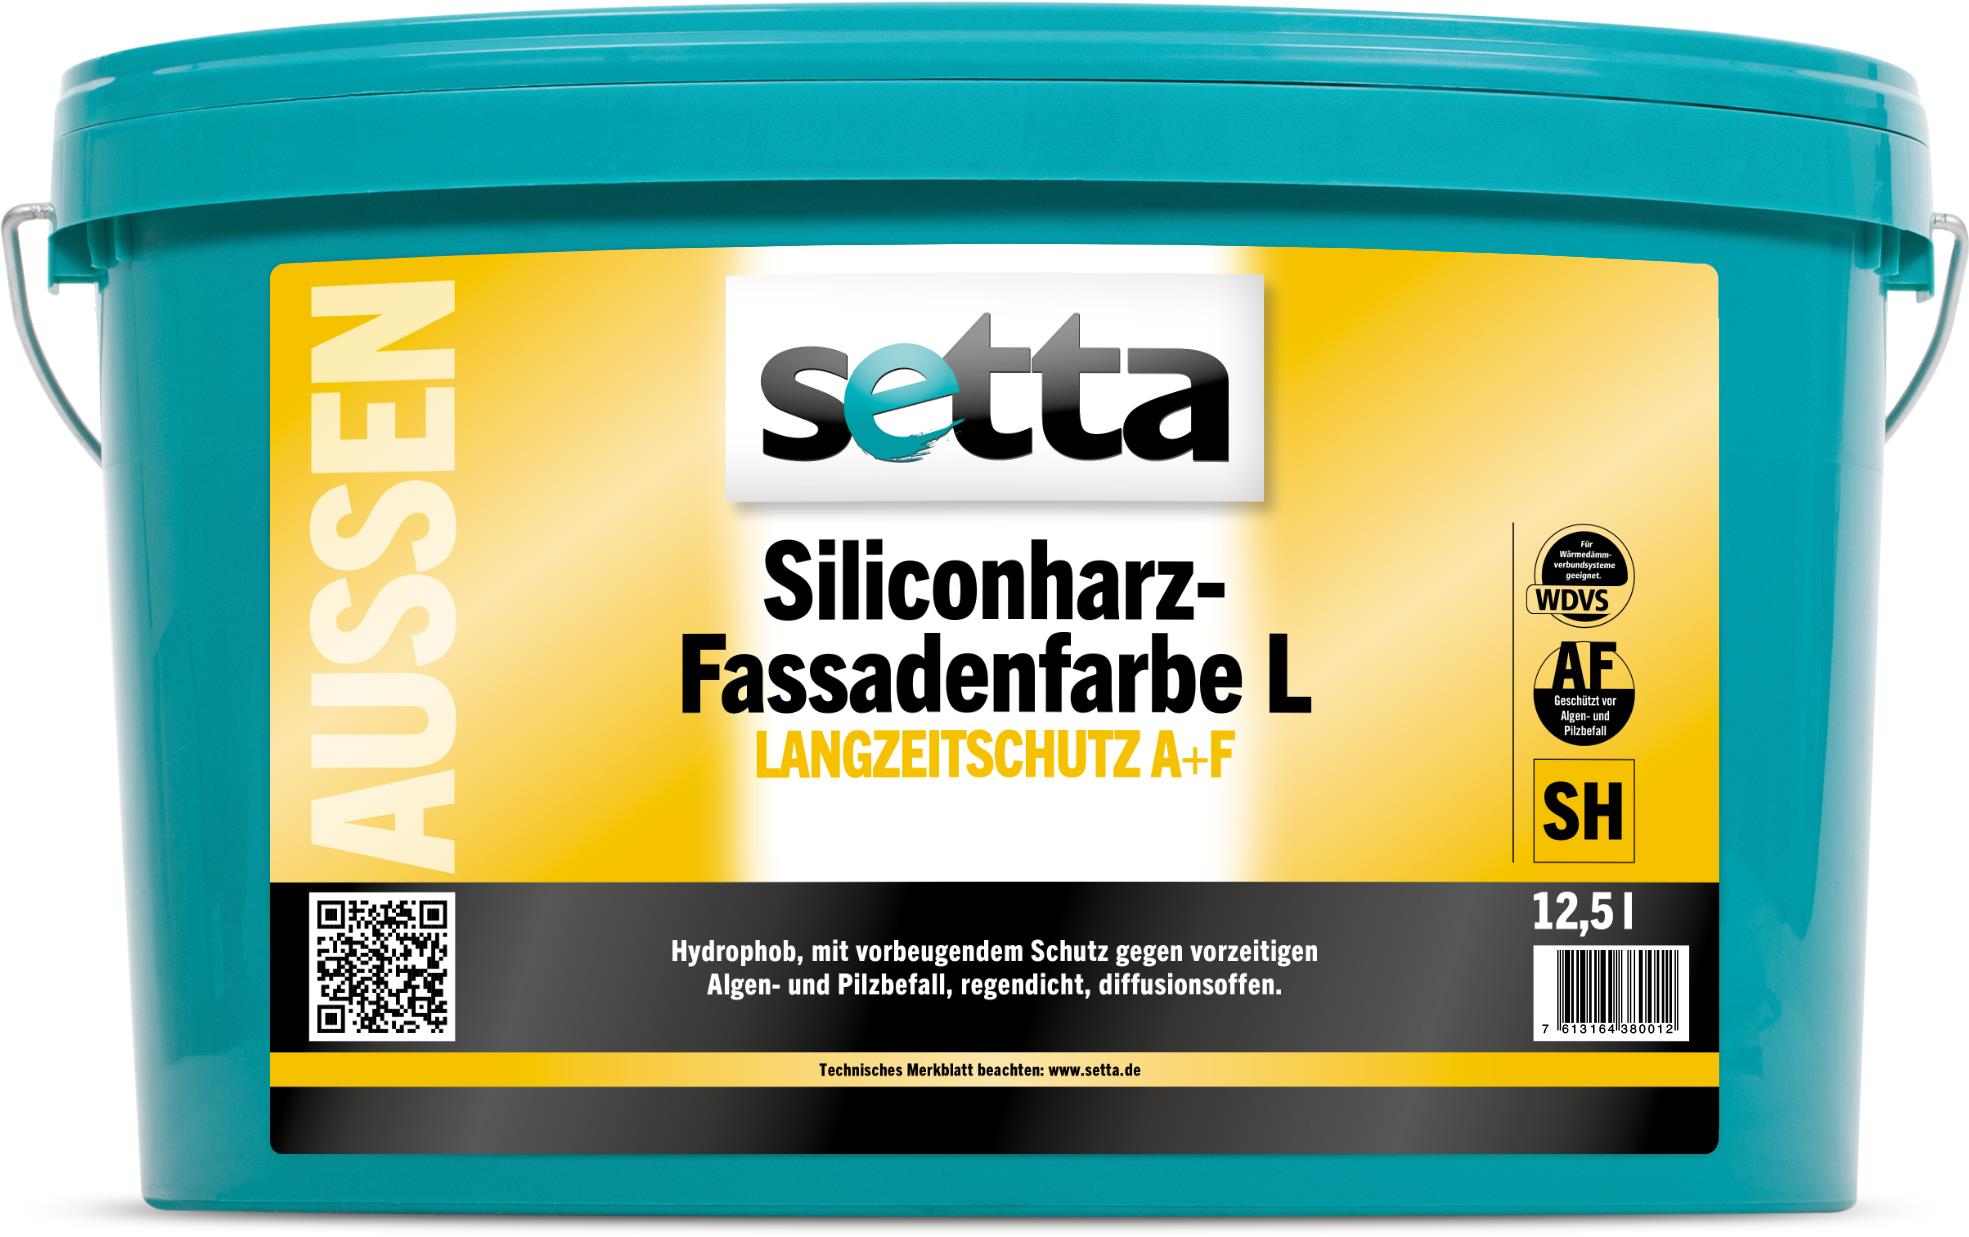 setta Siliconharz-Fassadenfarbe L, 12,5 l weiß